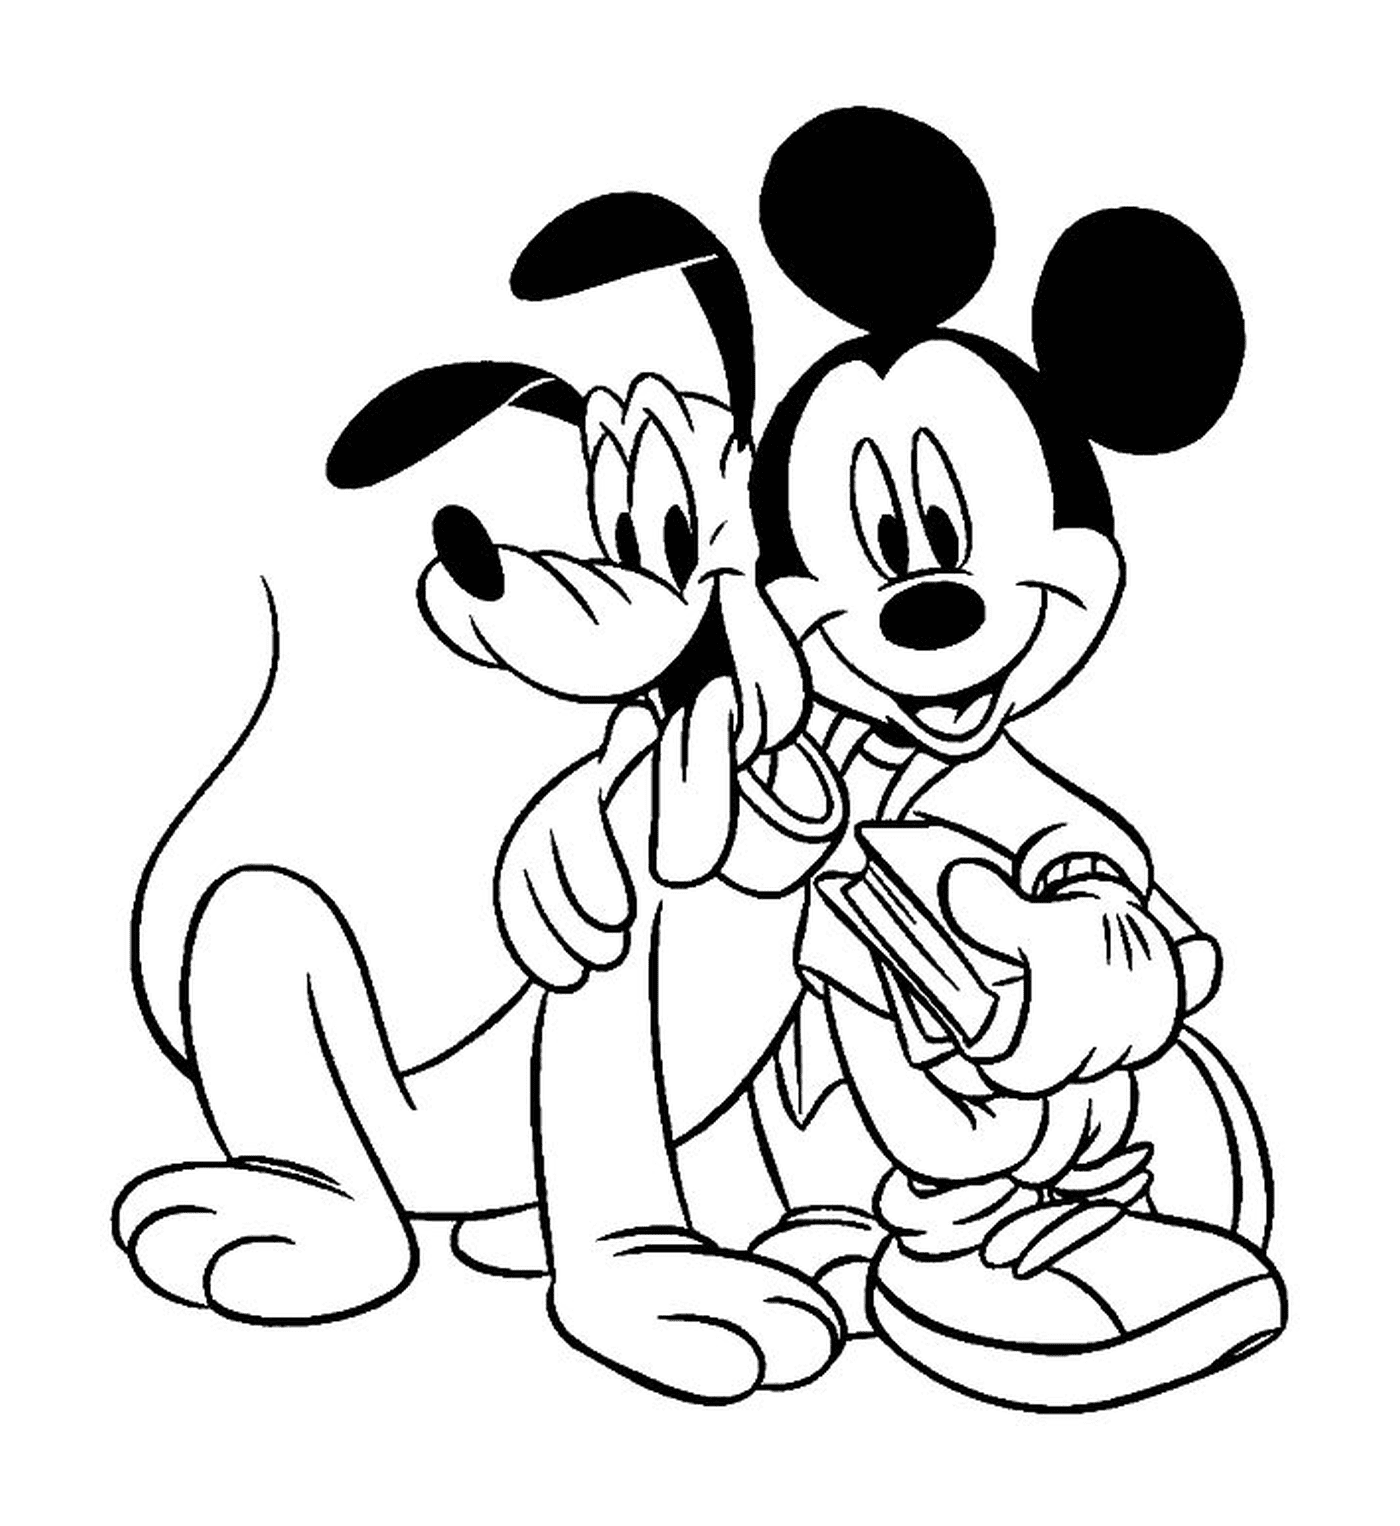  Mickey und sein Hund Pluto 